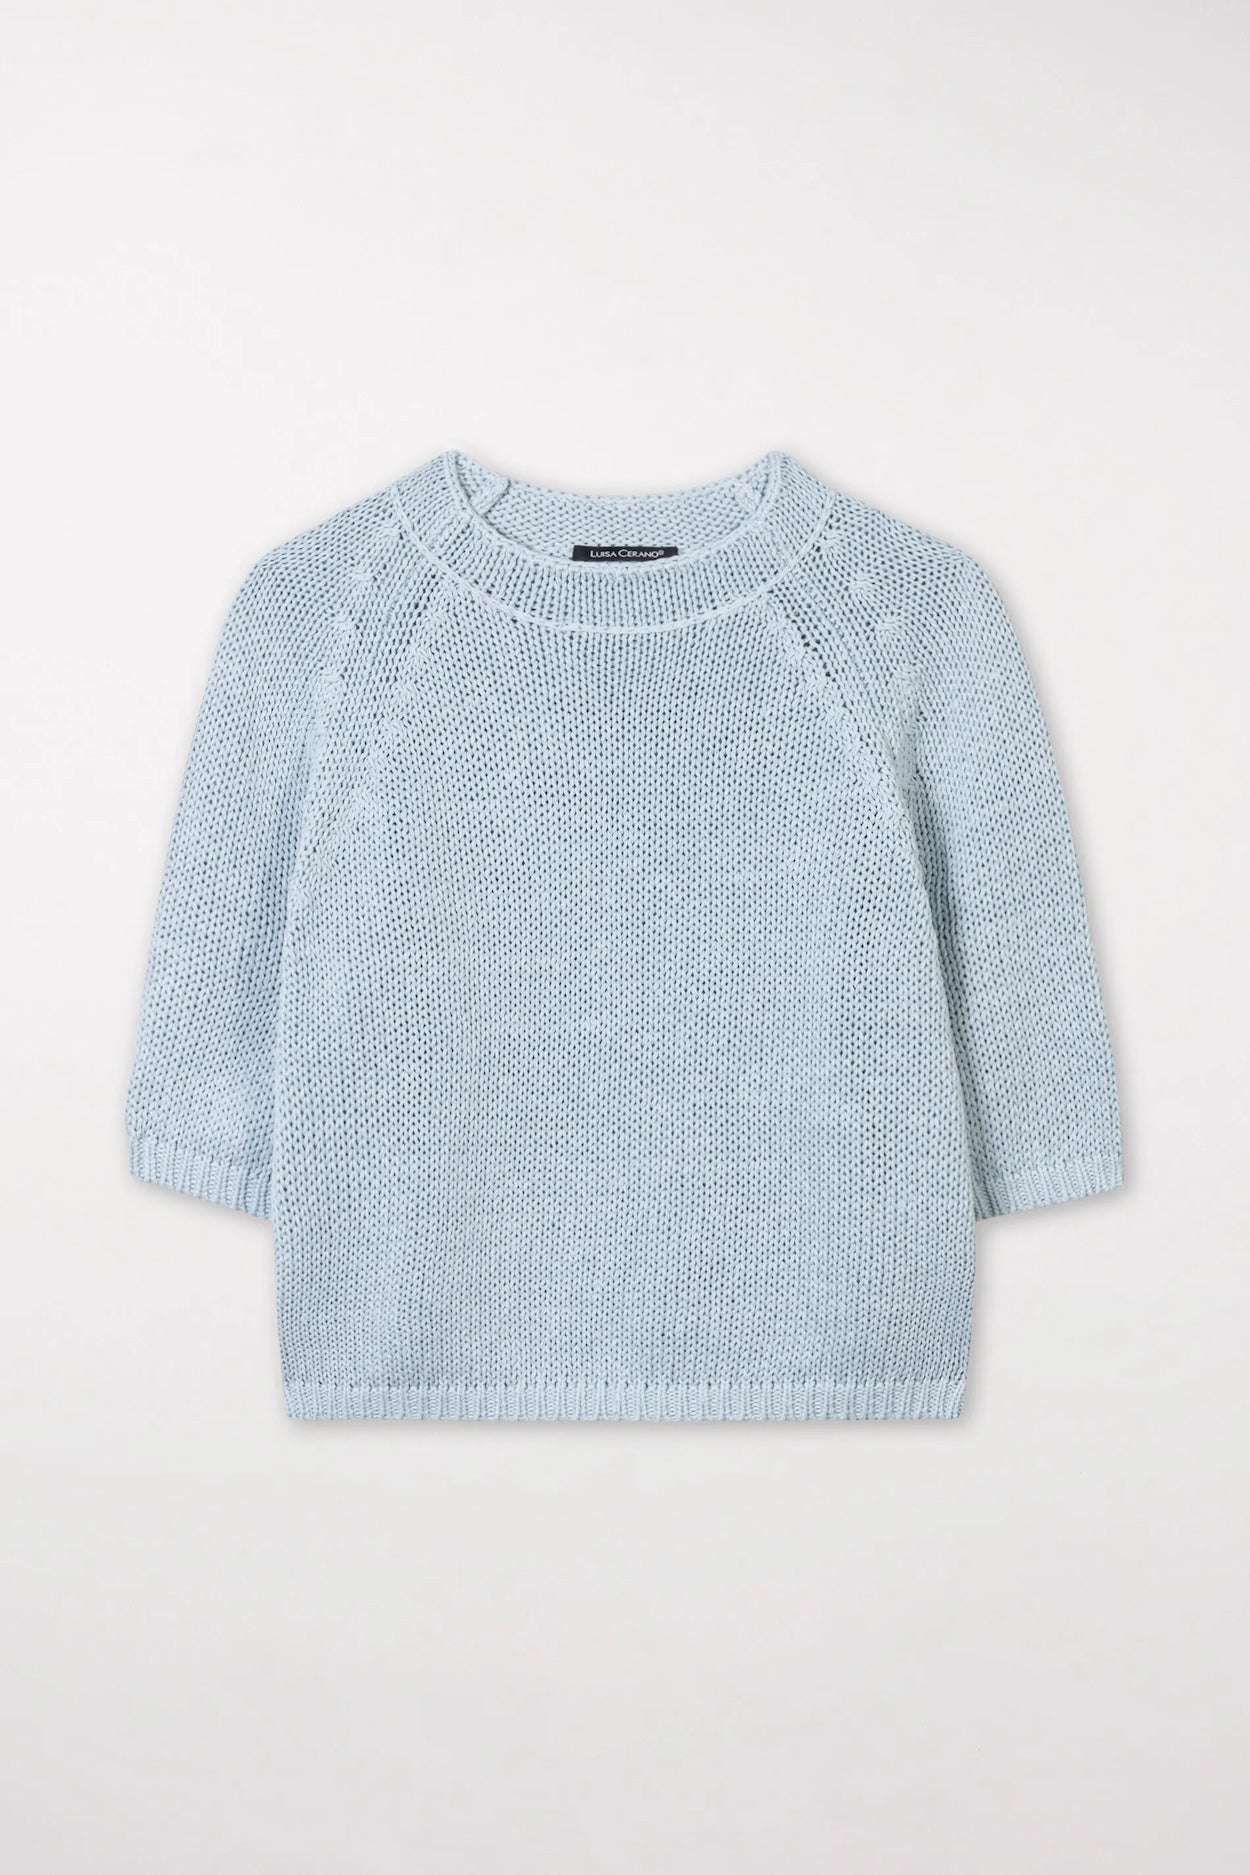 Sky Blue Linen Blend Knit Sweater